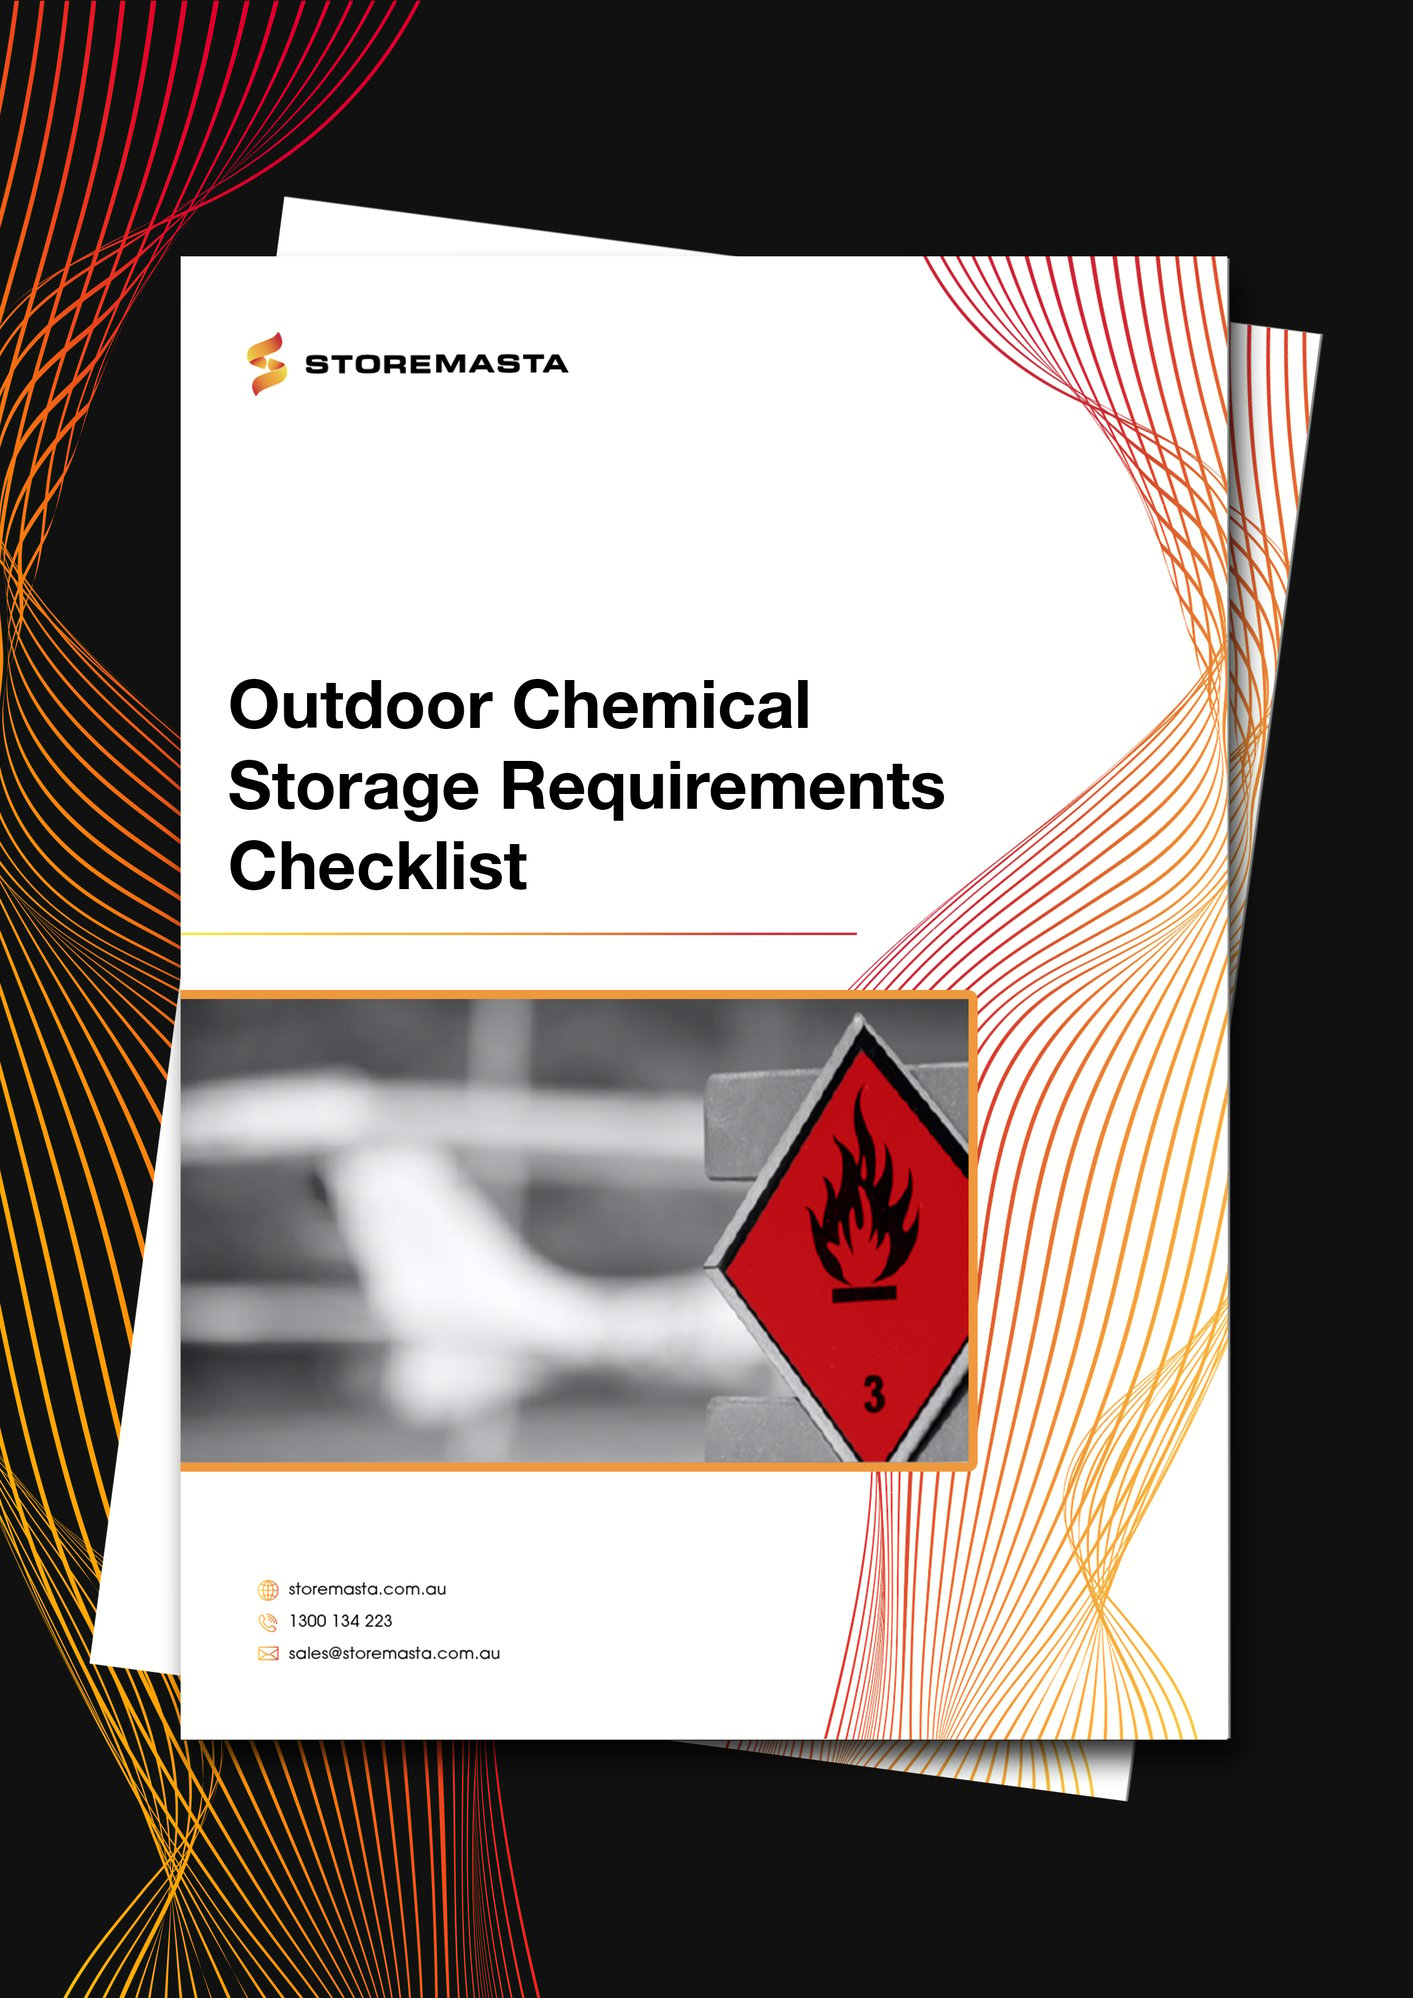 Storage requirements checklist